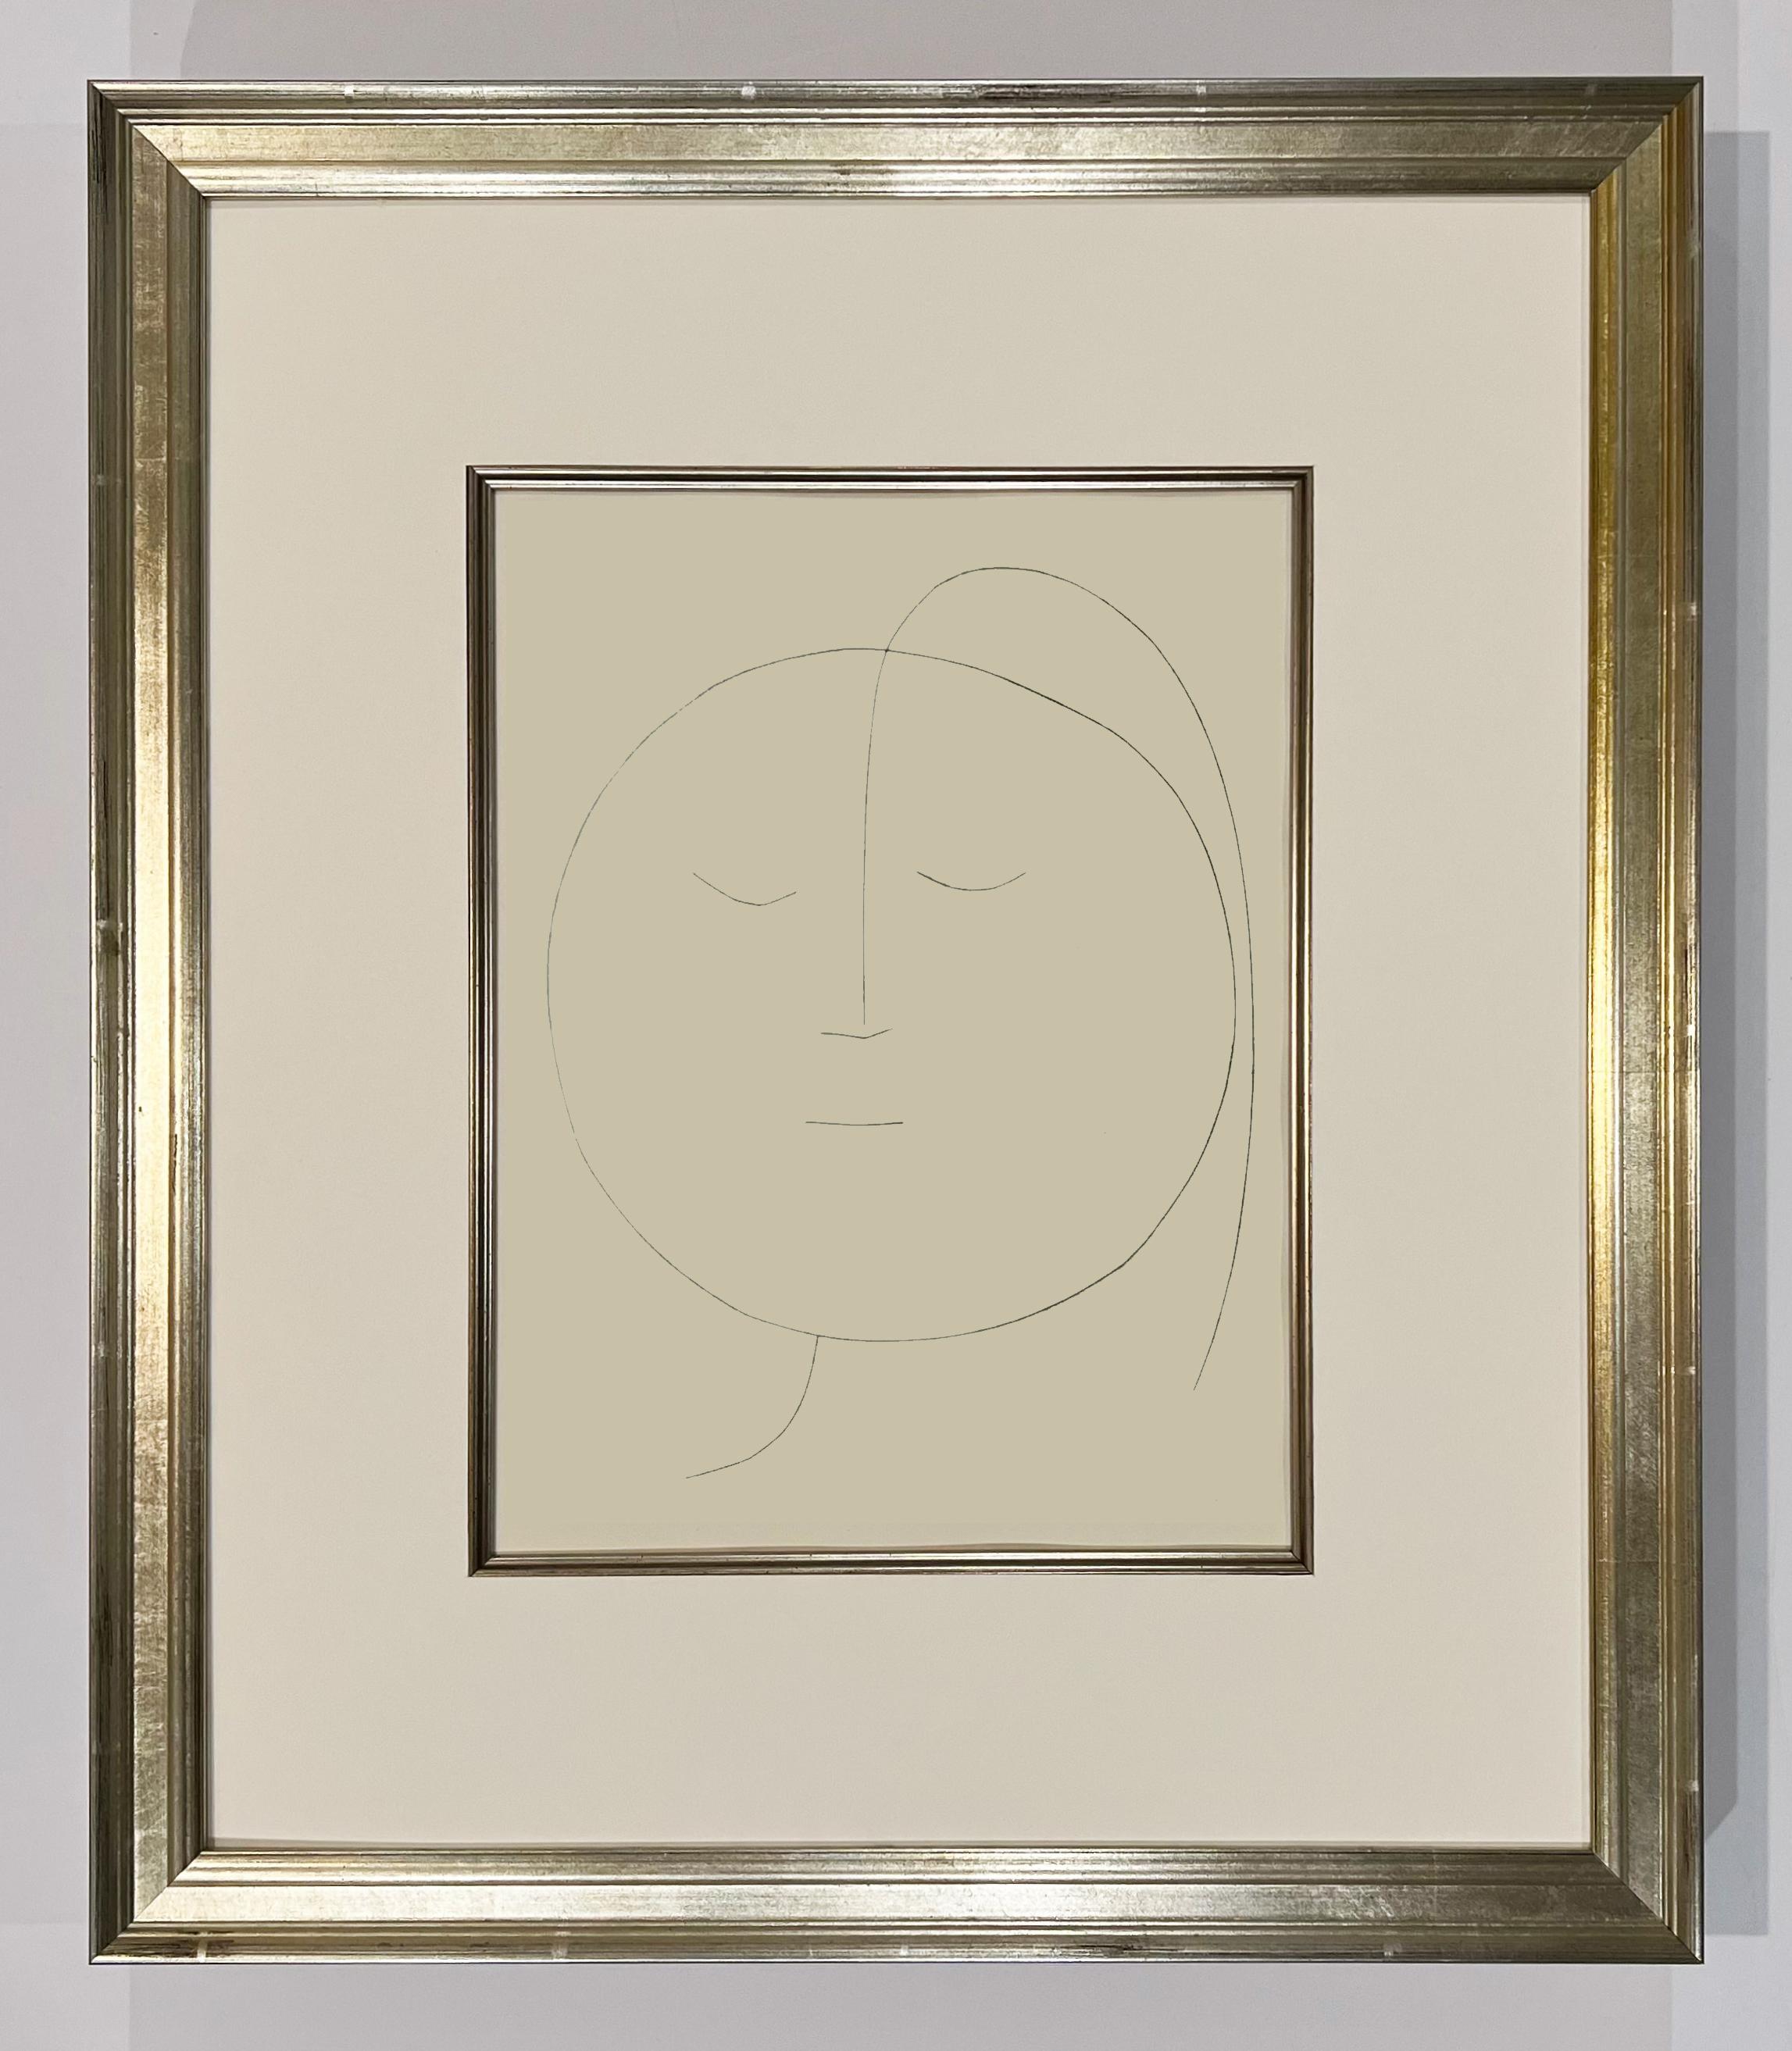 Tête ronde d'une femme avec des cheveux (plaque XVIII), de Carmen - Print de Pablo Picasso